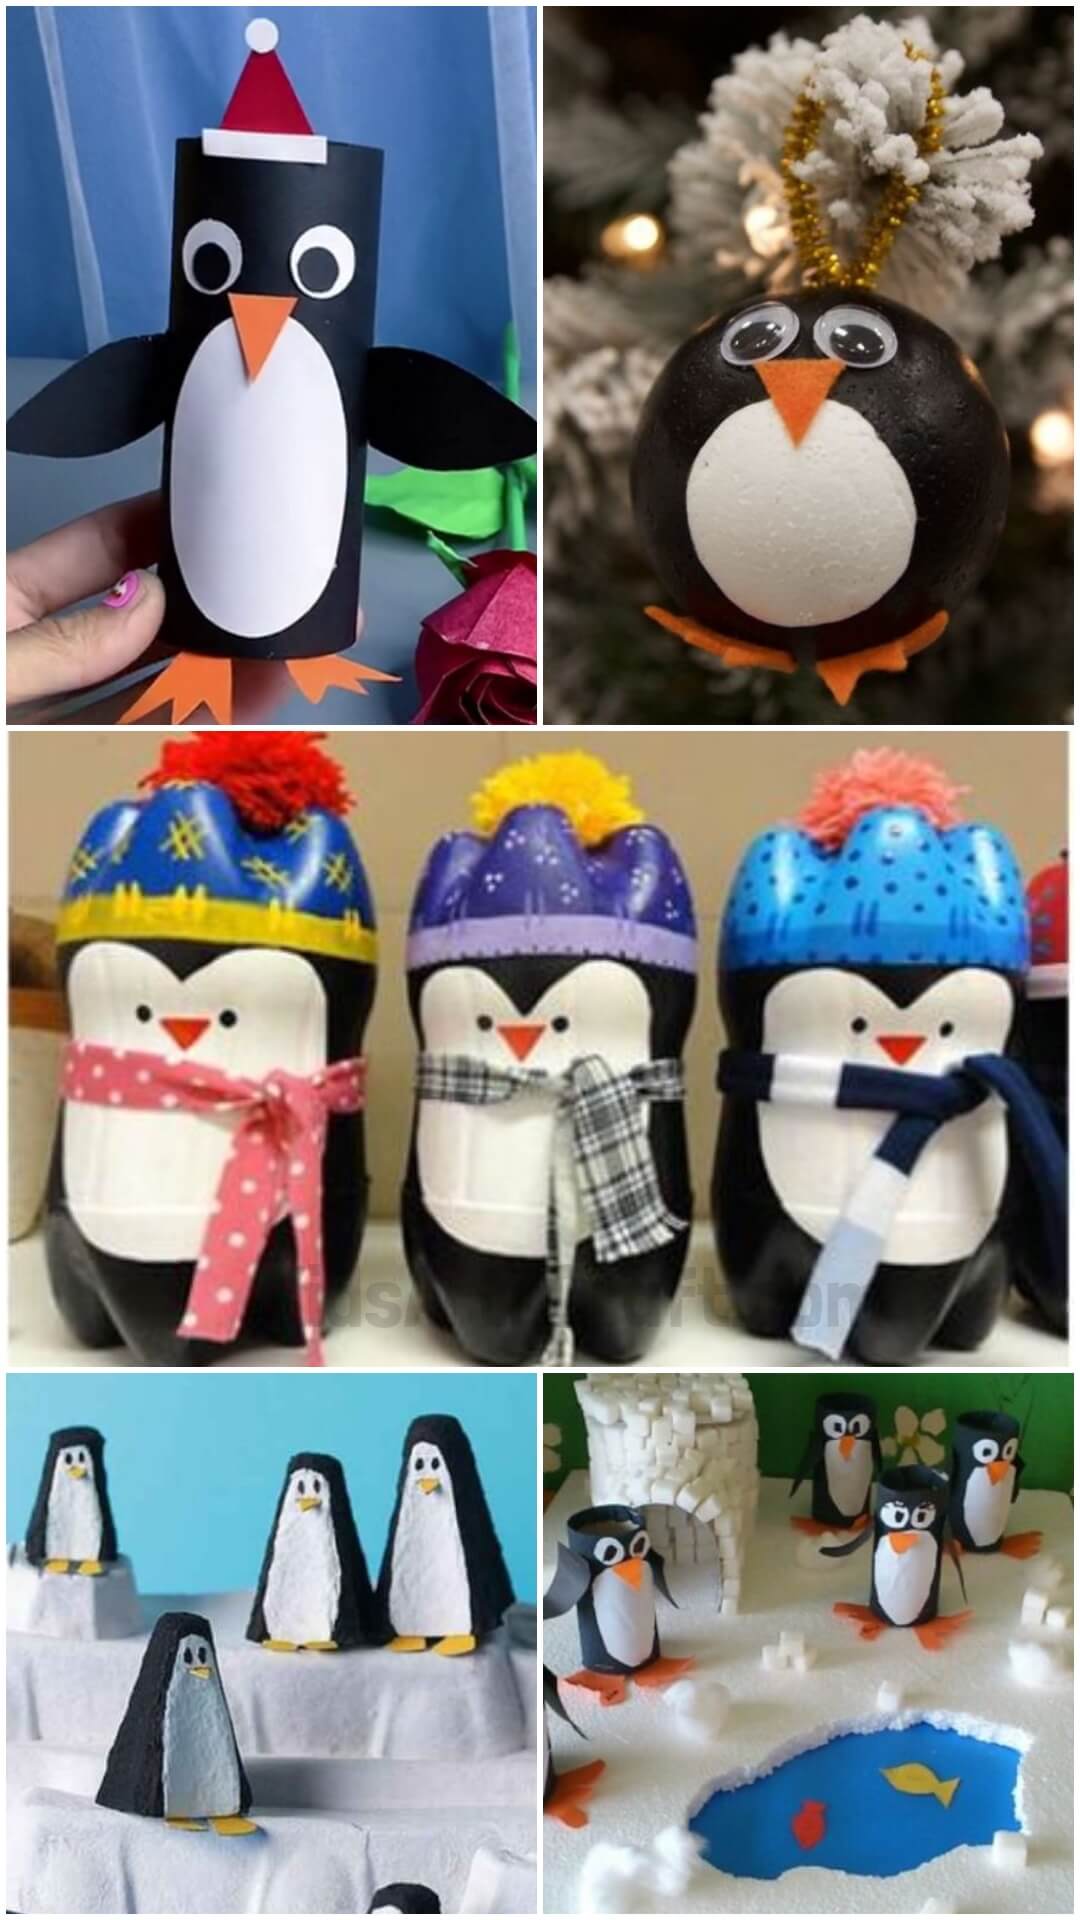 Penguin Winter Crafts & Activities for Kids